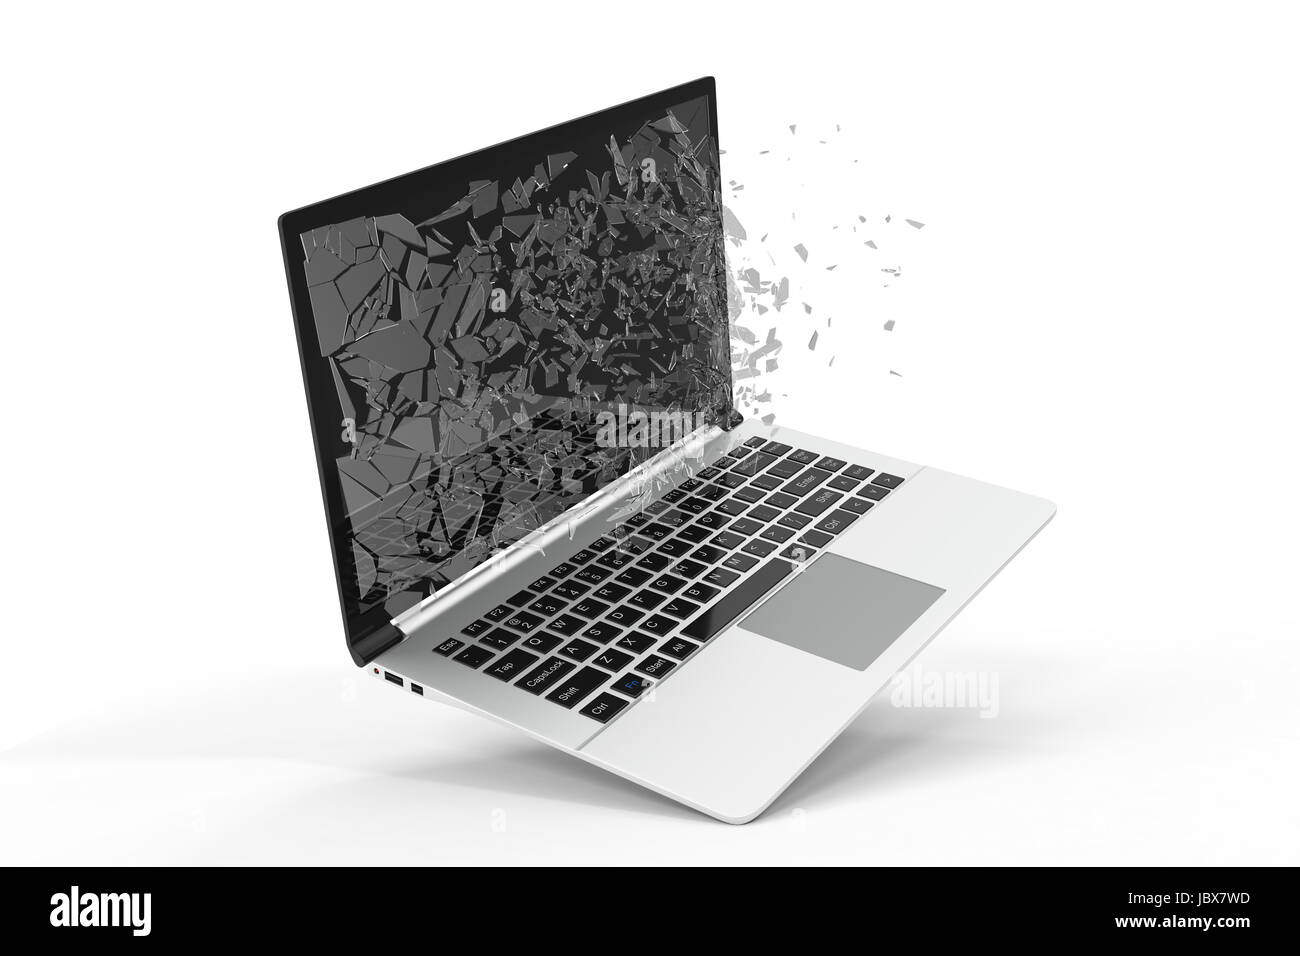 Hãy cùng khám phá máy tính hoặc Laptop với màn hình bể nát trên nền trắng cô đọng. Bức ảnh này sẽ khiến bạn cảm thấy thích thú và tìm hiểu thêm về sản phẩm độc đáo này. 